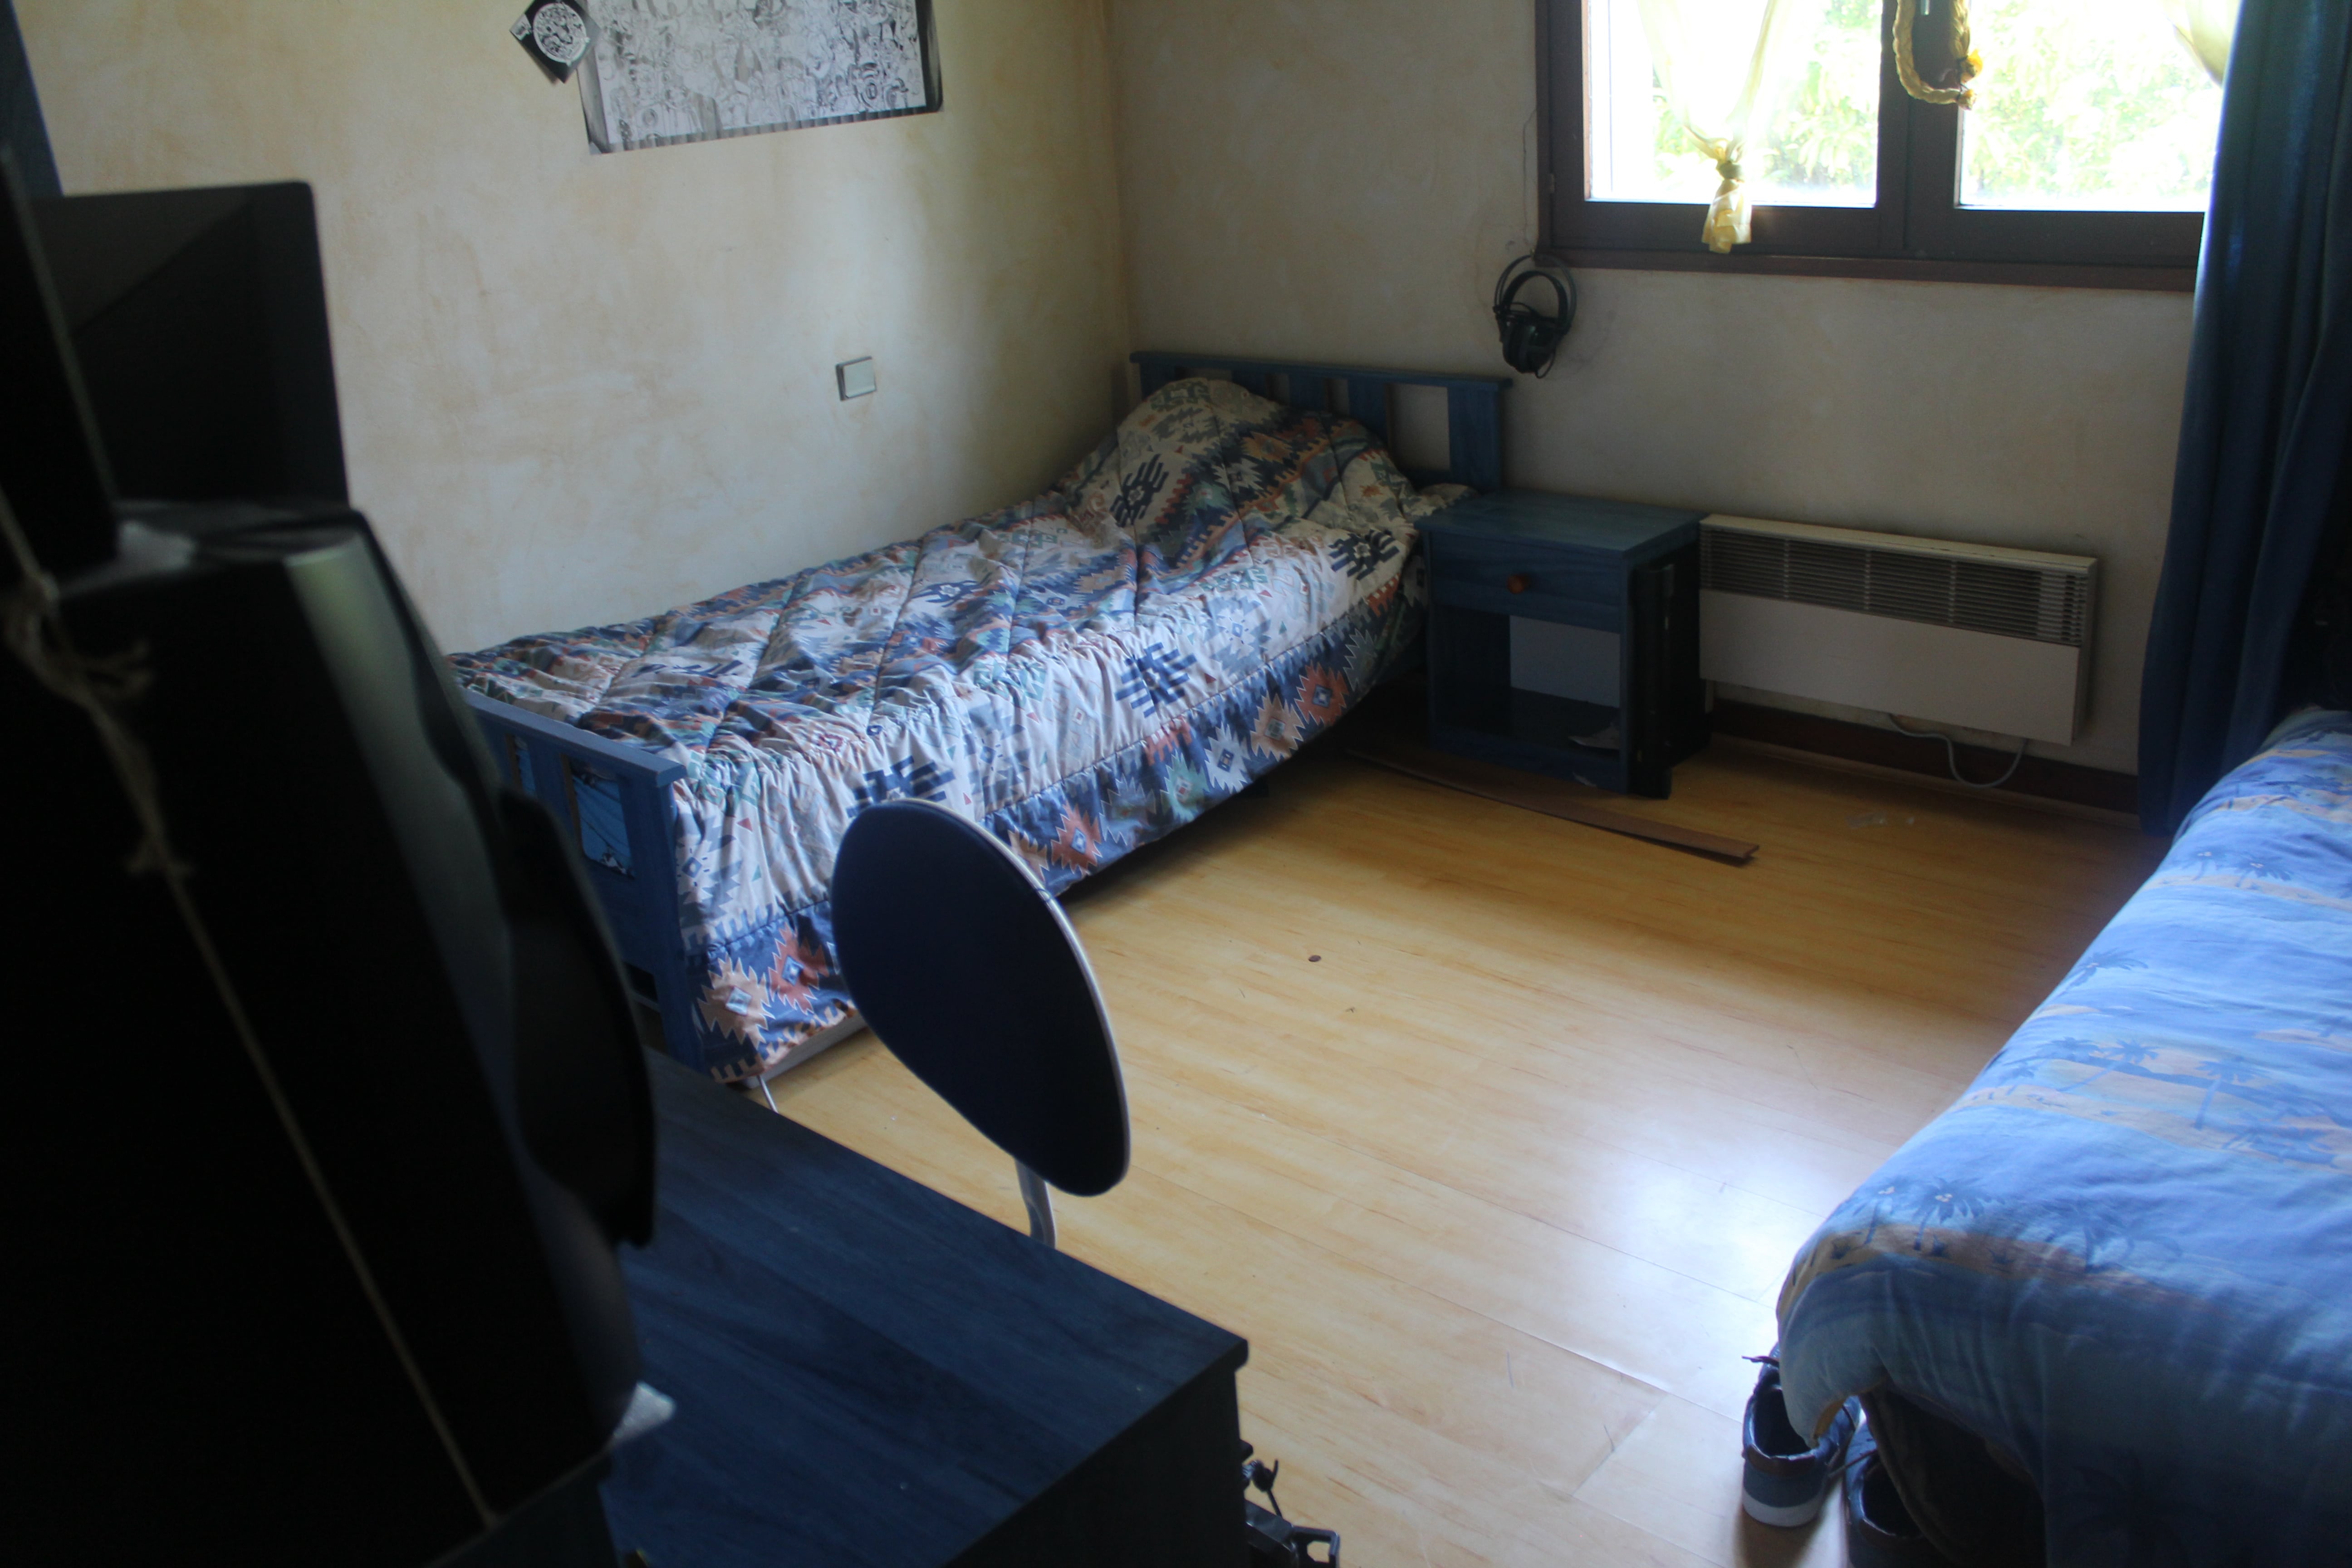 Chambre - 15 m2, 2 lits, pour chaque colocataire par lit -210 euros, ou chambre seule - 390 euros, charges comprises